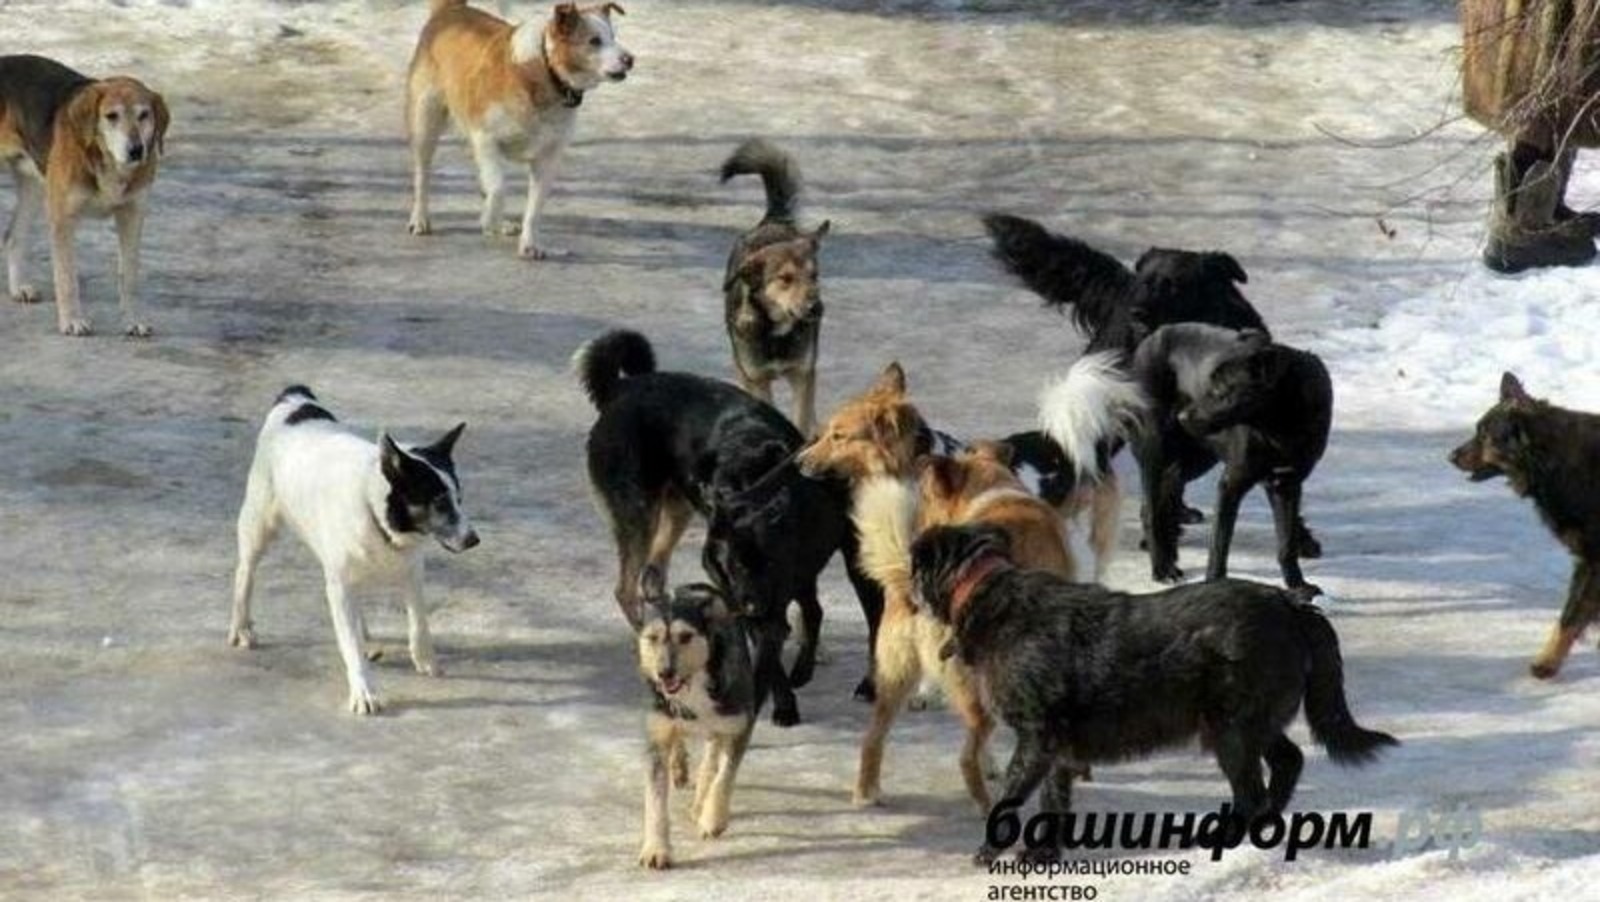 В Госдуму внесут законопроект об уголовной ответственности для чиновников за нападение собак